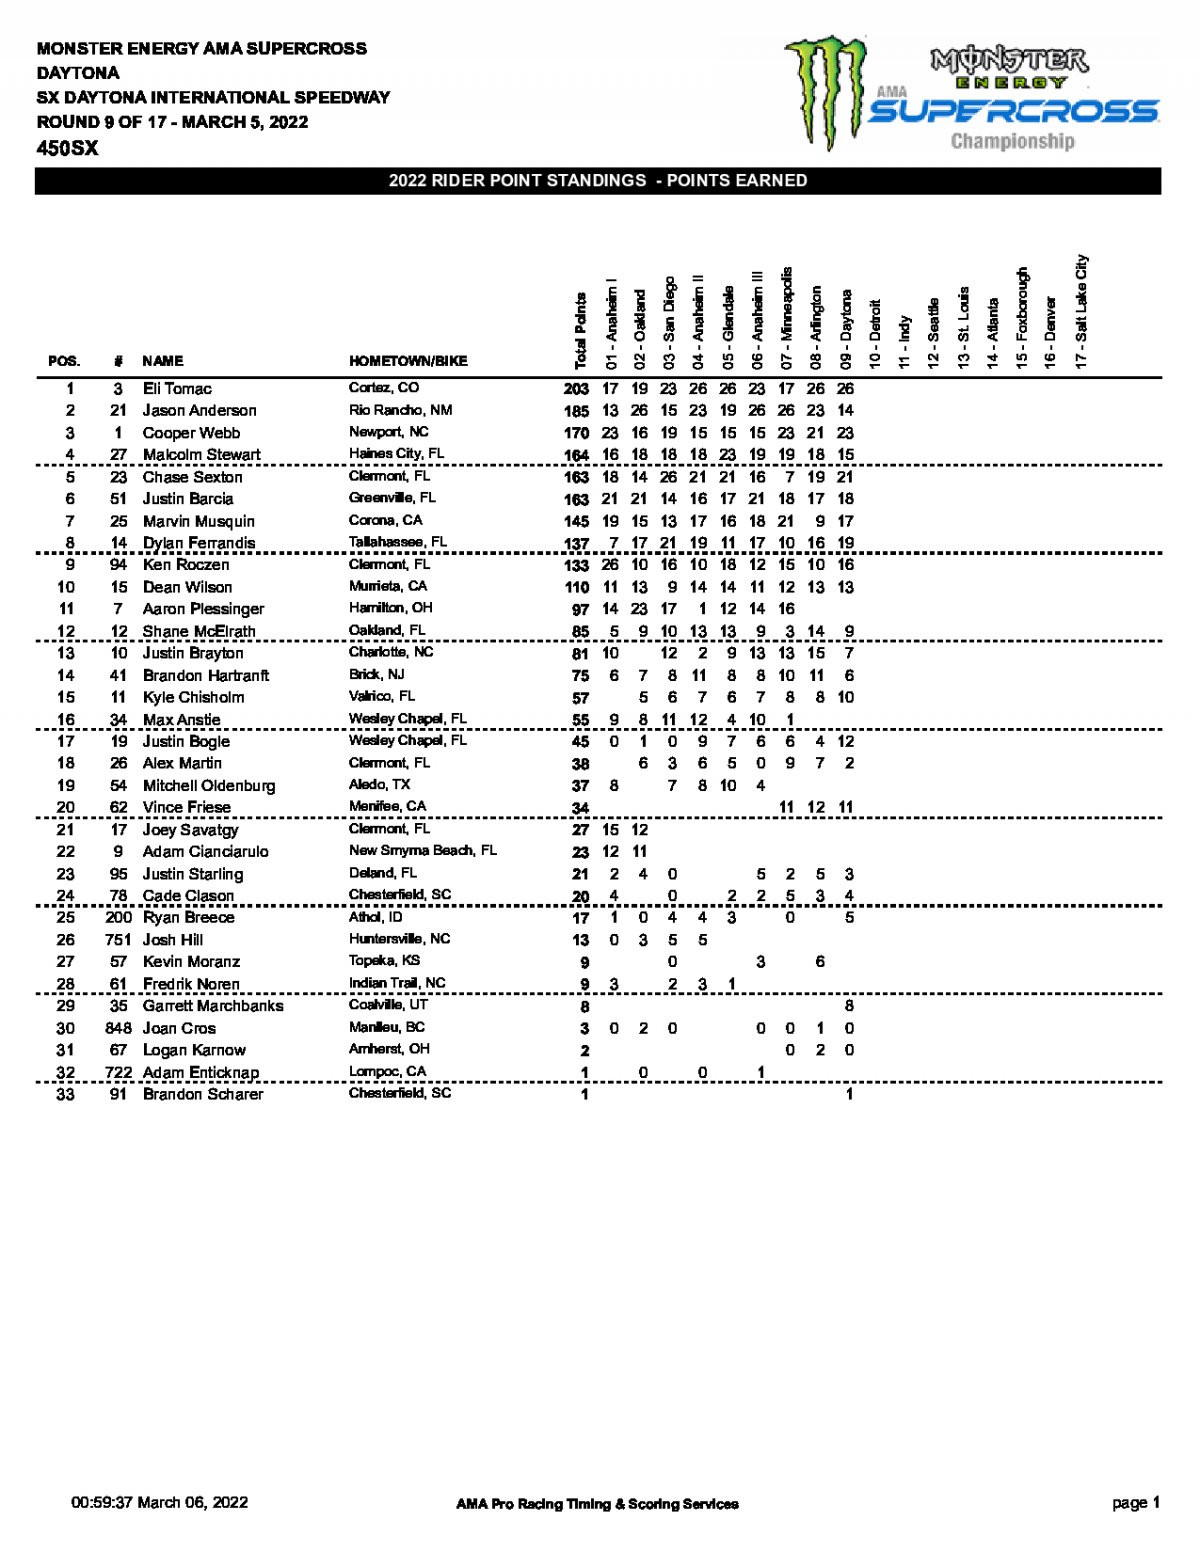 Положение в чемпионате AMA Supercross 450SX по итогам 9 этапа